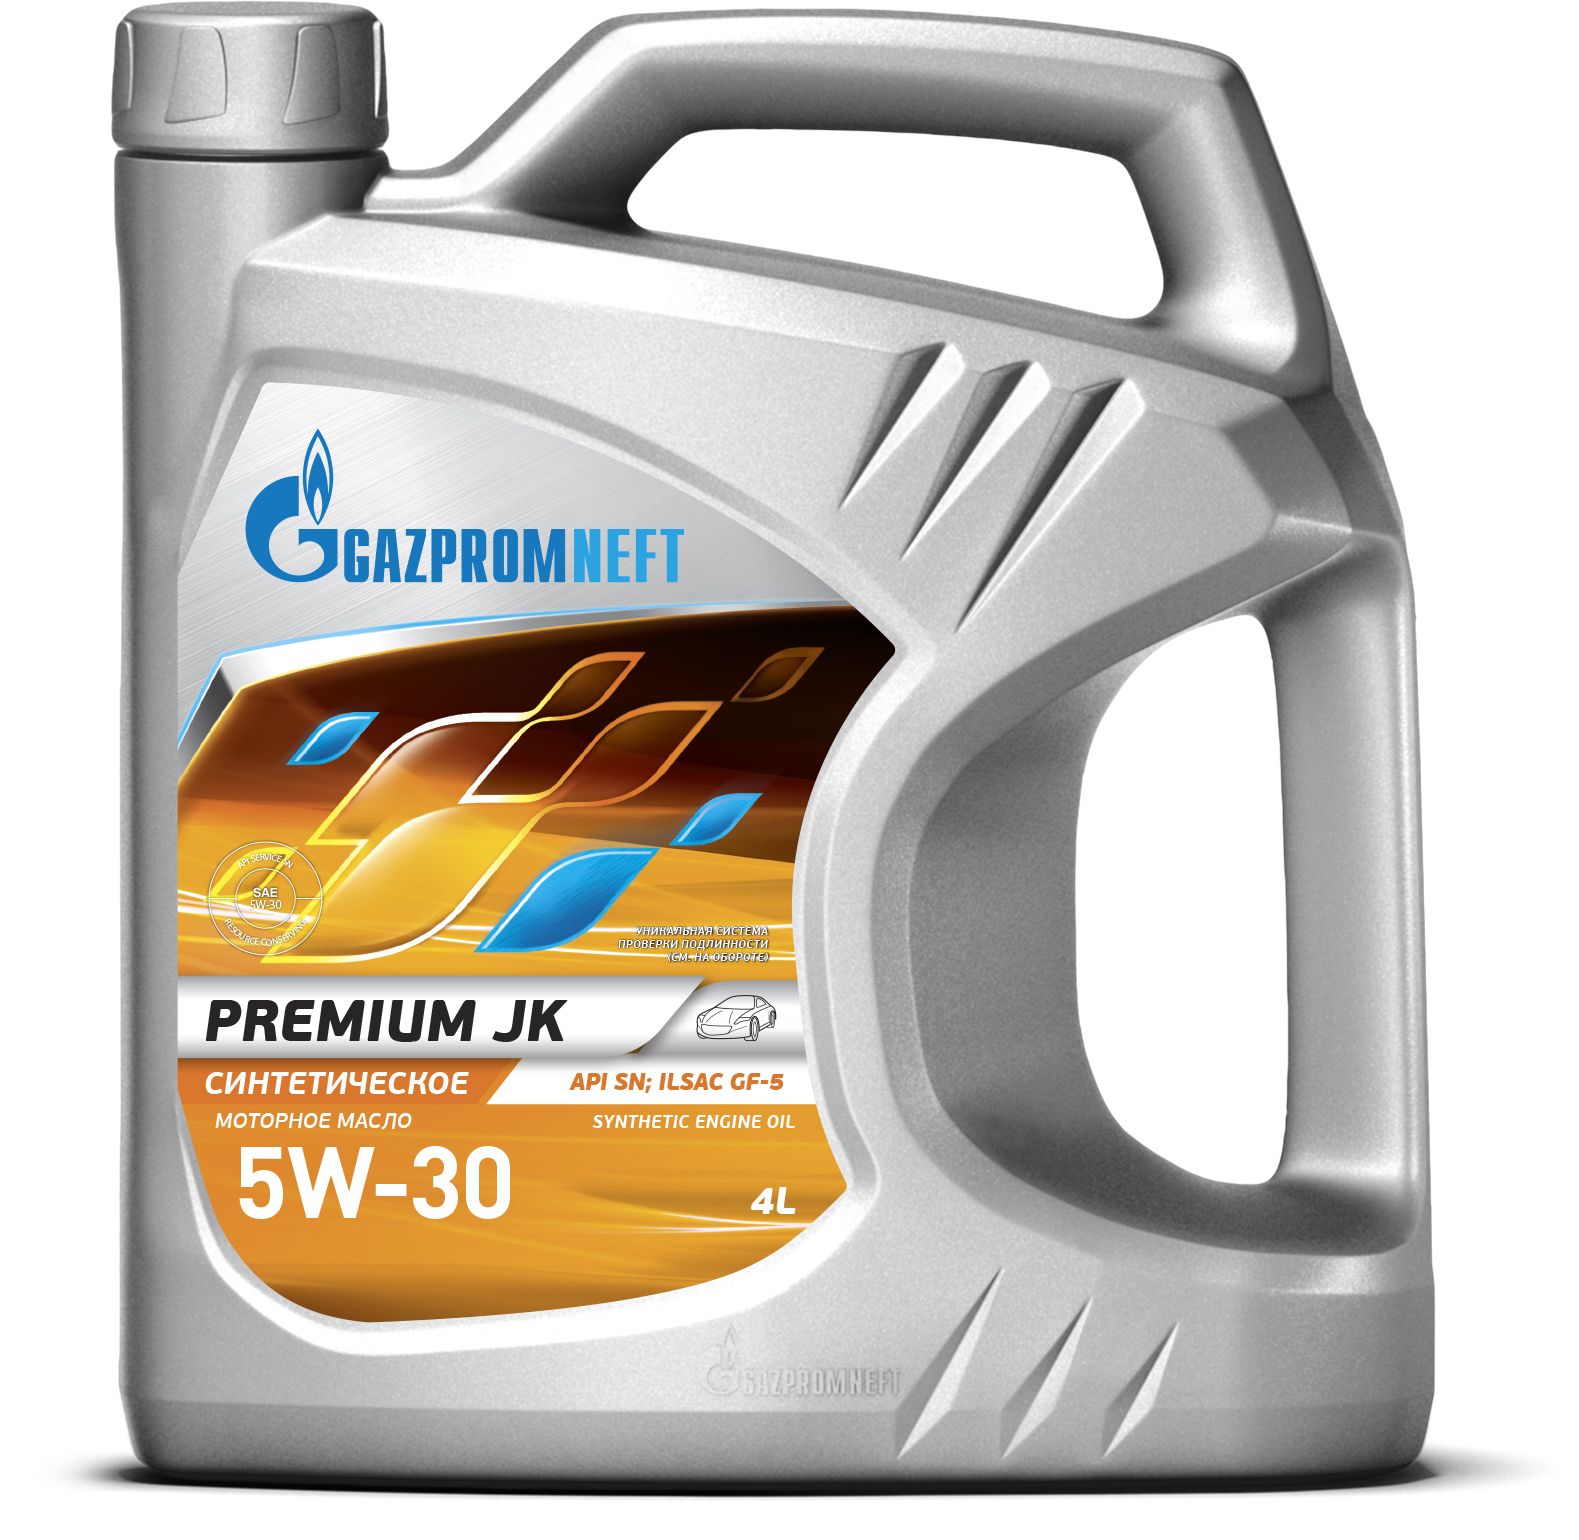 Озон масло газпромнефть. Gazpromneft Premium n 5w40 4л. Gazpromneft Premium JK 5w-30. Gazpromneft масло Premium l 10w-40 4л.